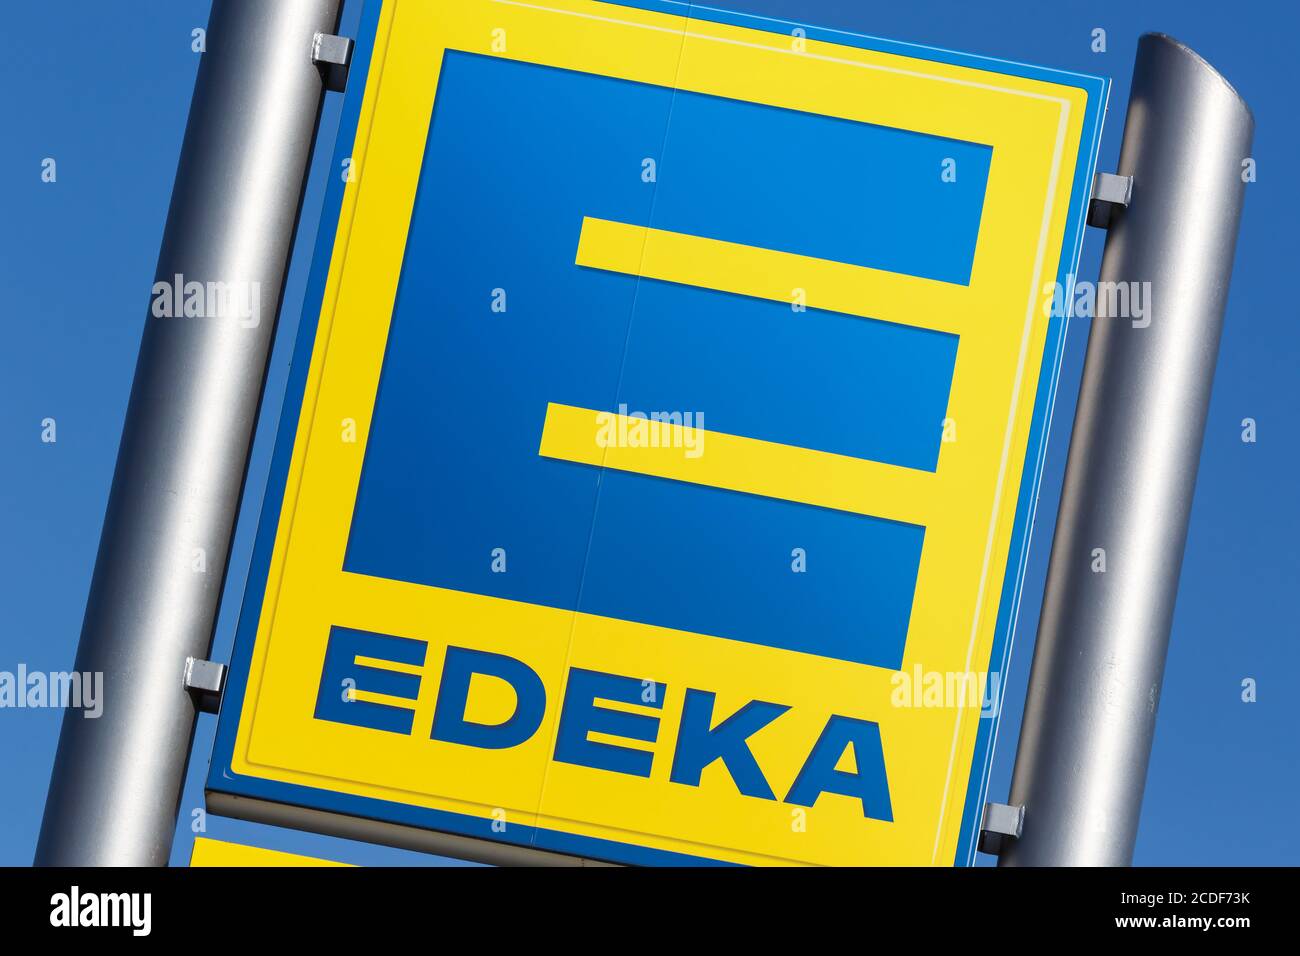 Stoccarda, Germania - 17 maggio 2020: Cartello con il logo Edeka supermercato discount food shop in Germania. Foto Stock